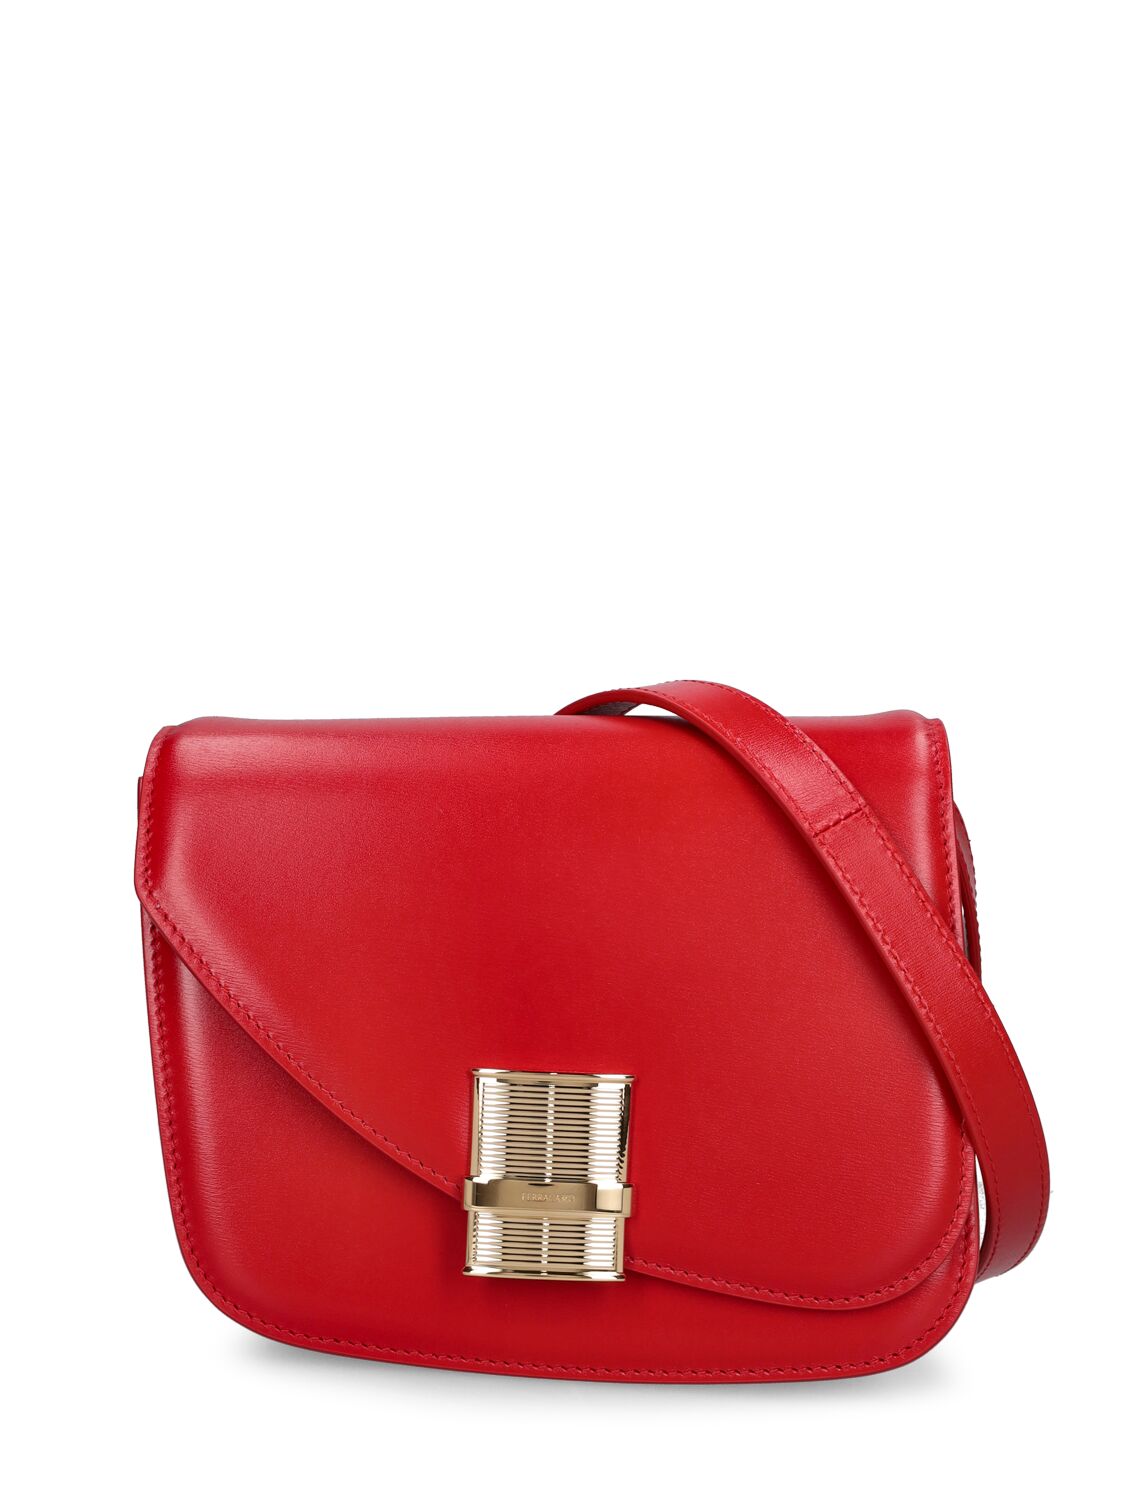 Ferragamo Small Fiamma Leather Shoulder Bag In Flame Red